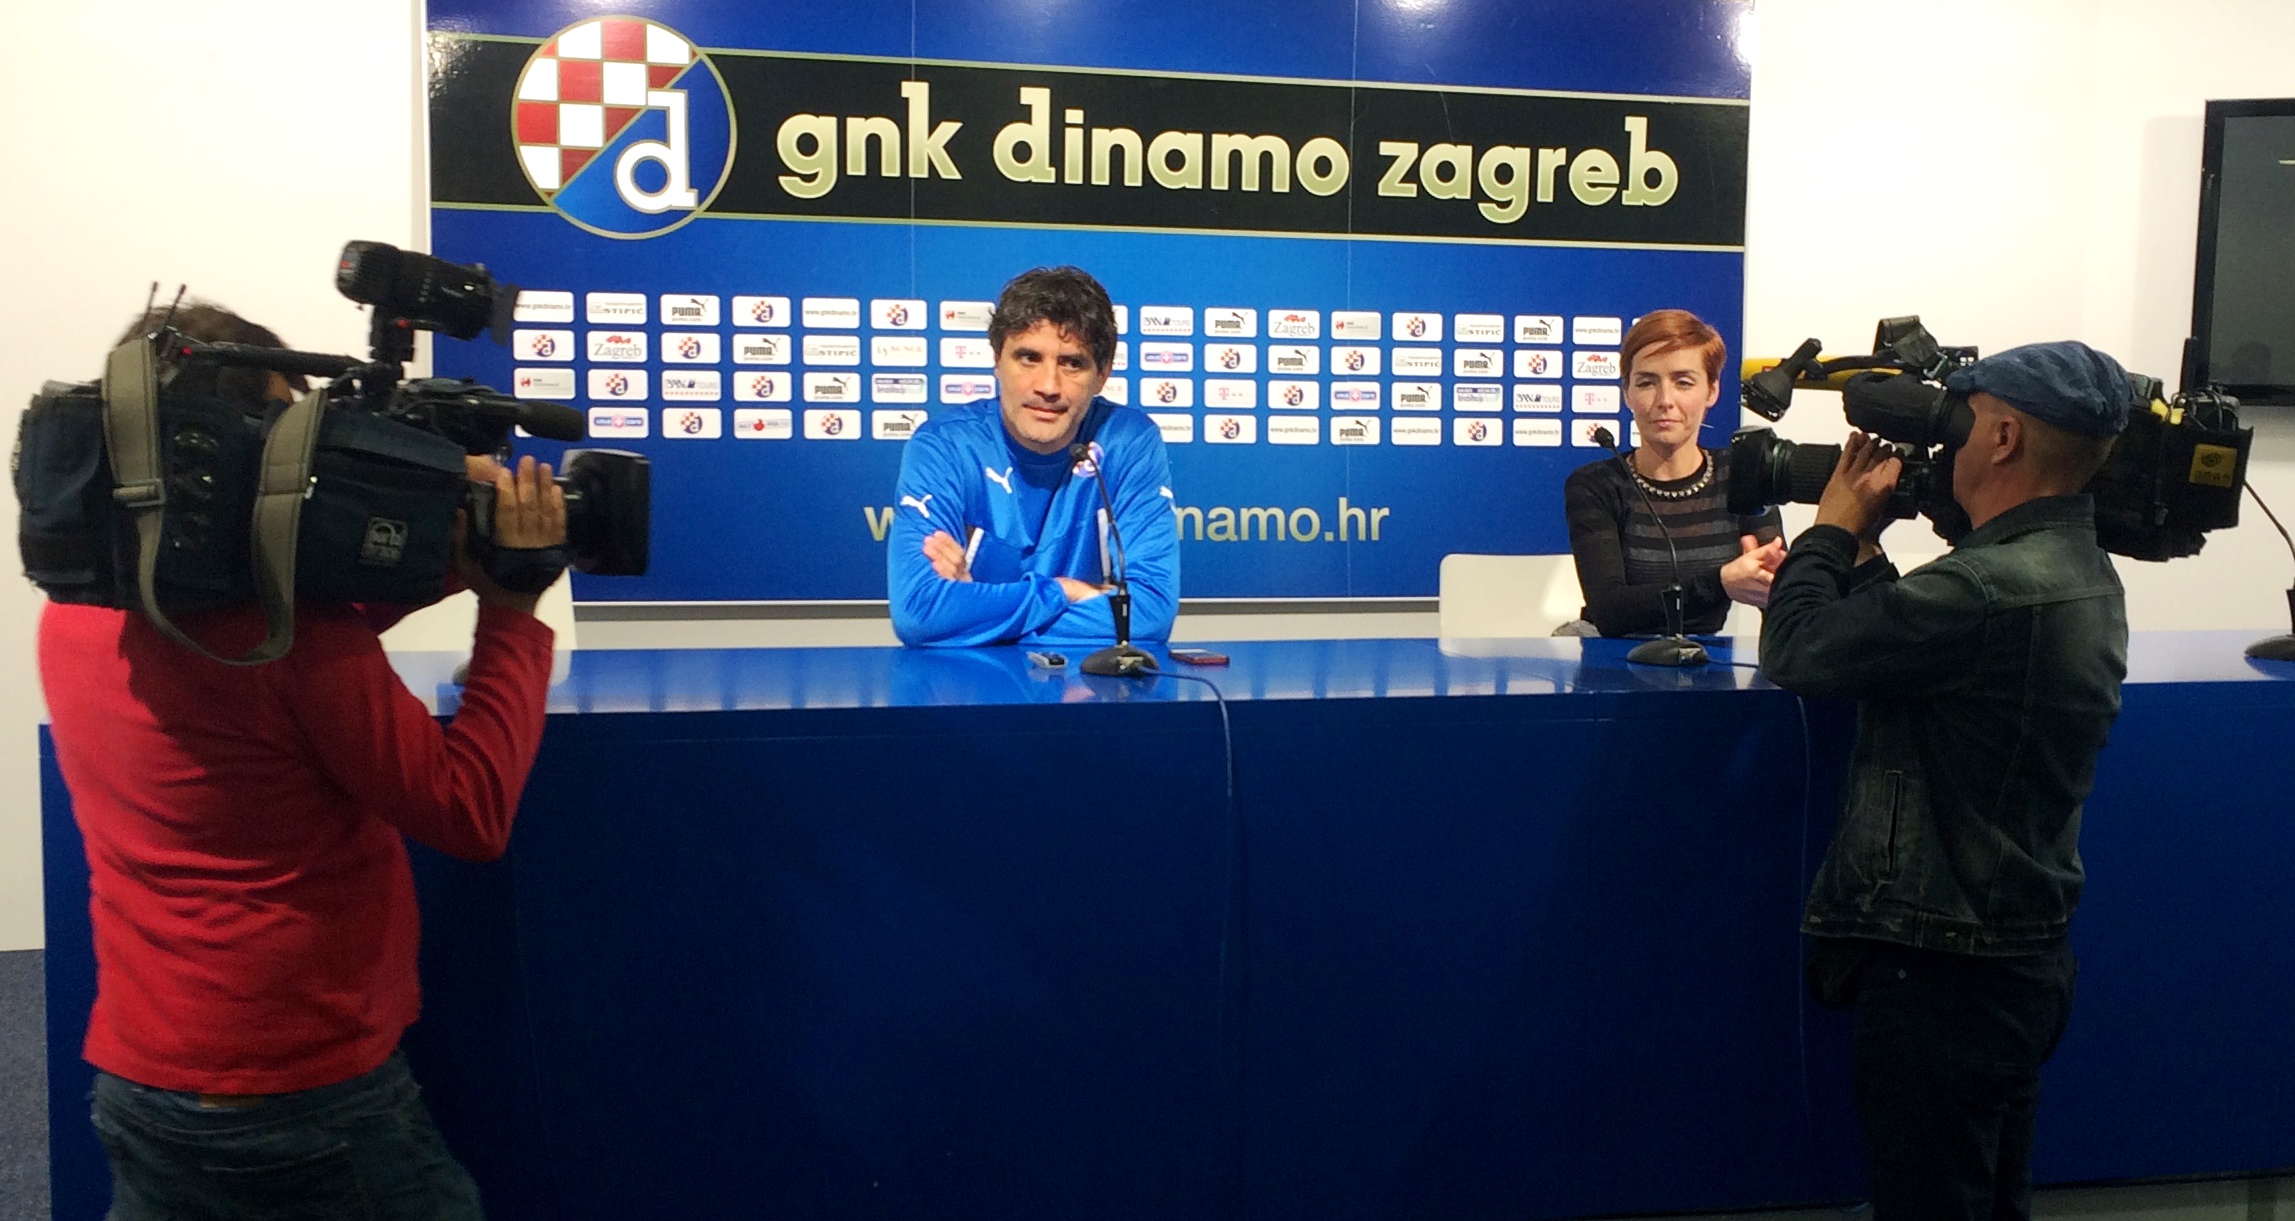 IZ MAKSIMIRA: Trener Dinama pričao o Čačićevom popisu, dotaknuo se i Hajduka